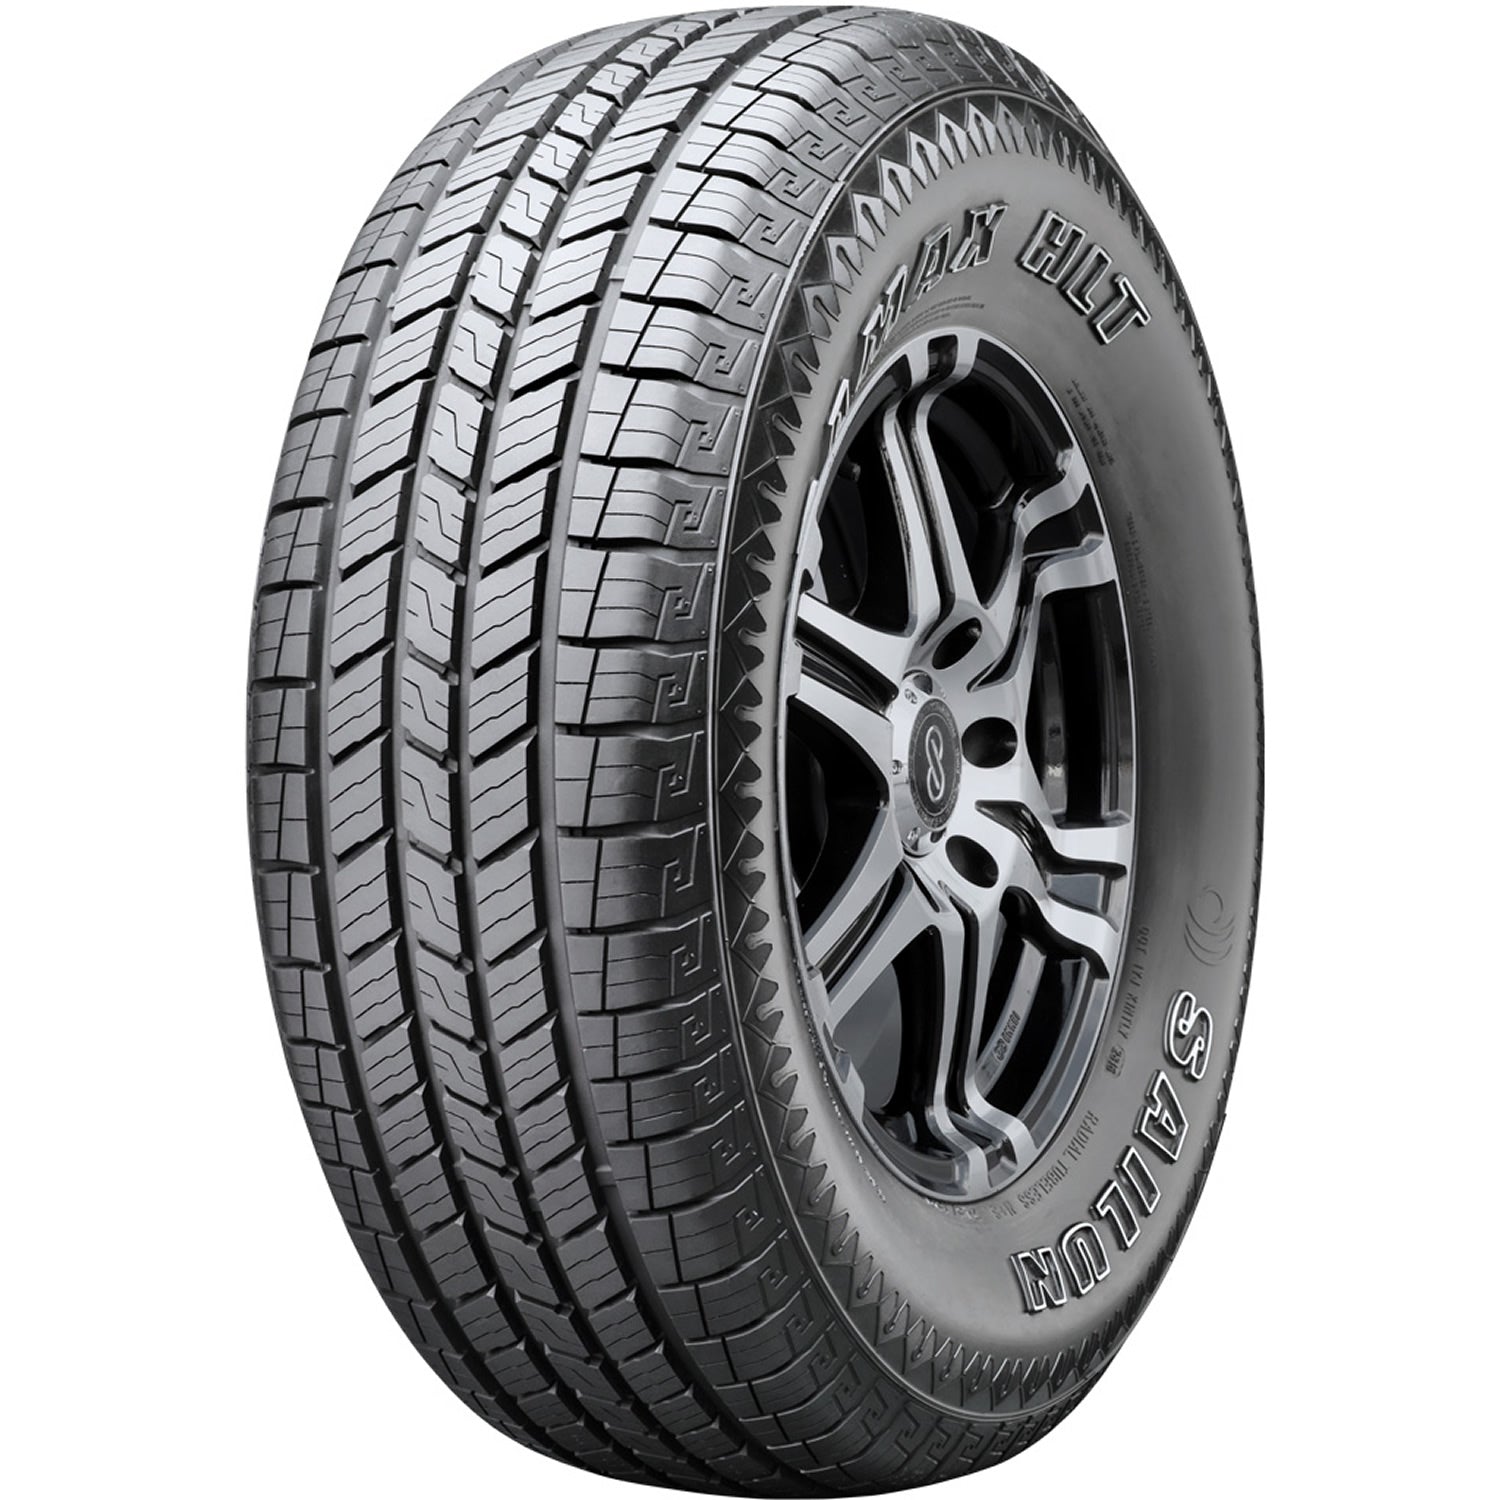 SAILUN TERRAMAX HLT 235/65R18 (30X9.5R 18) Tires